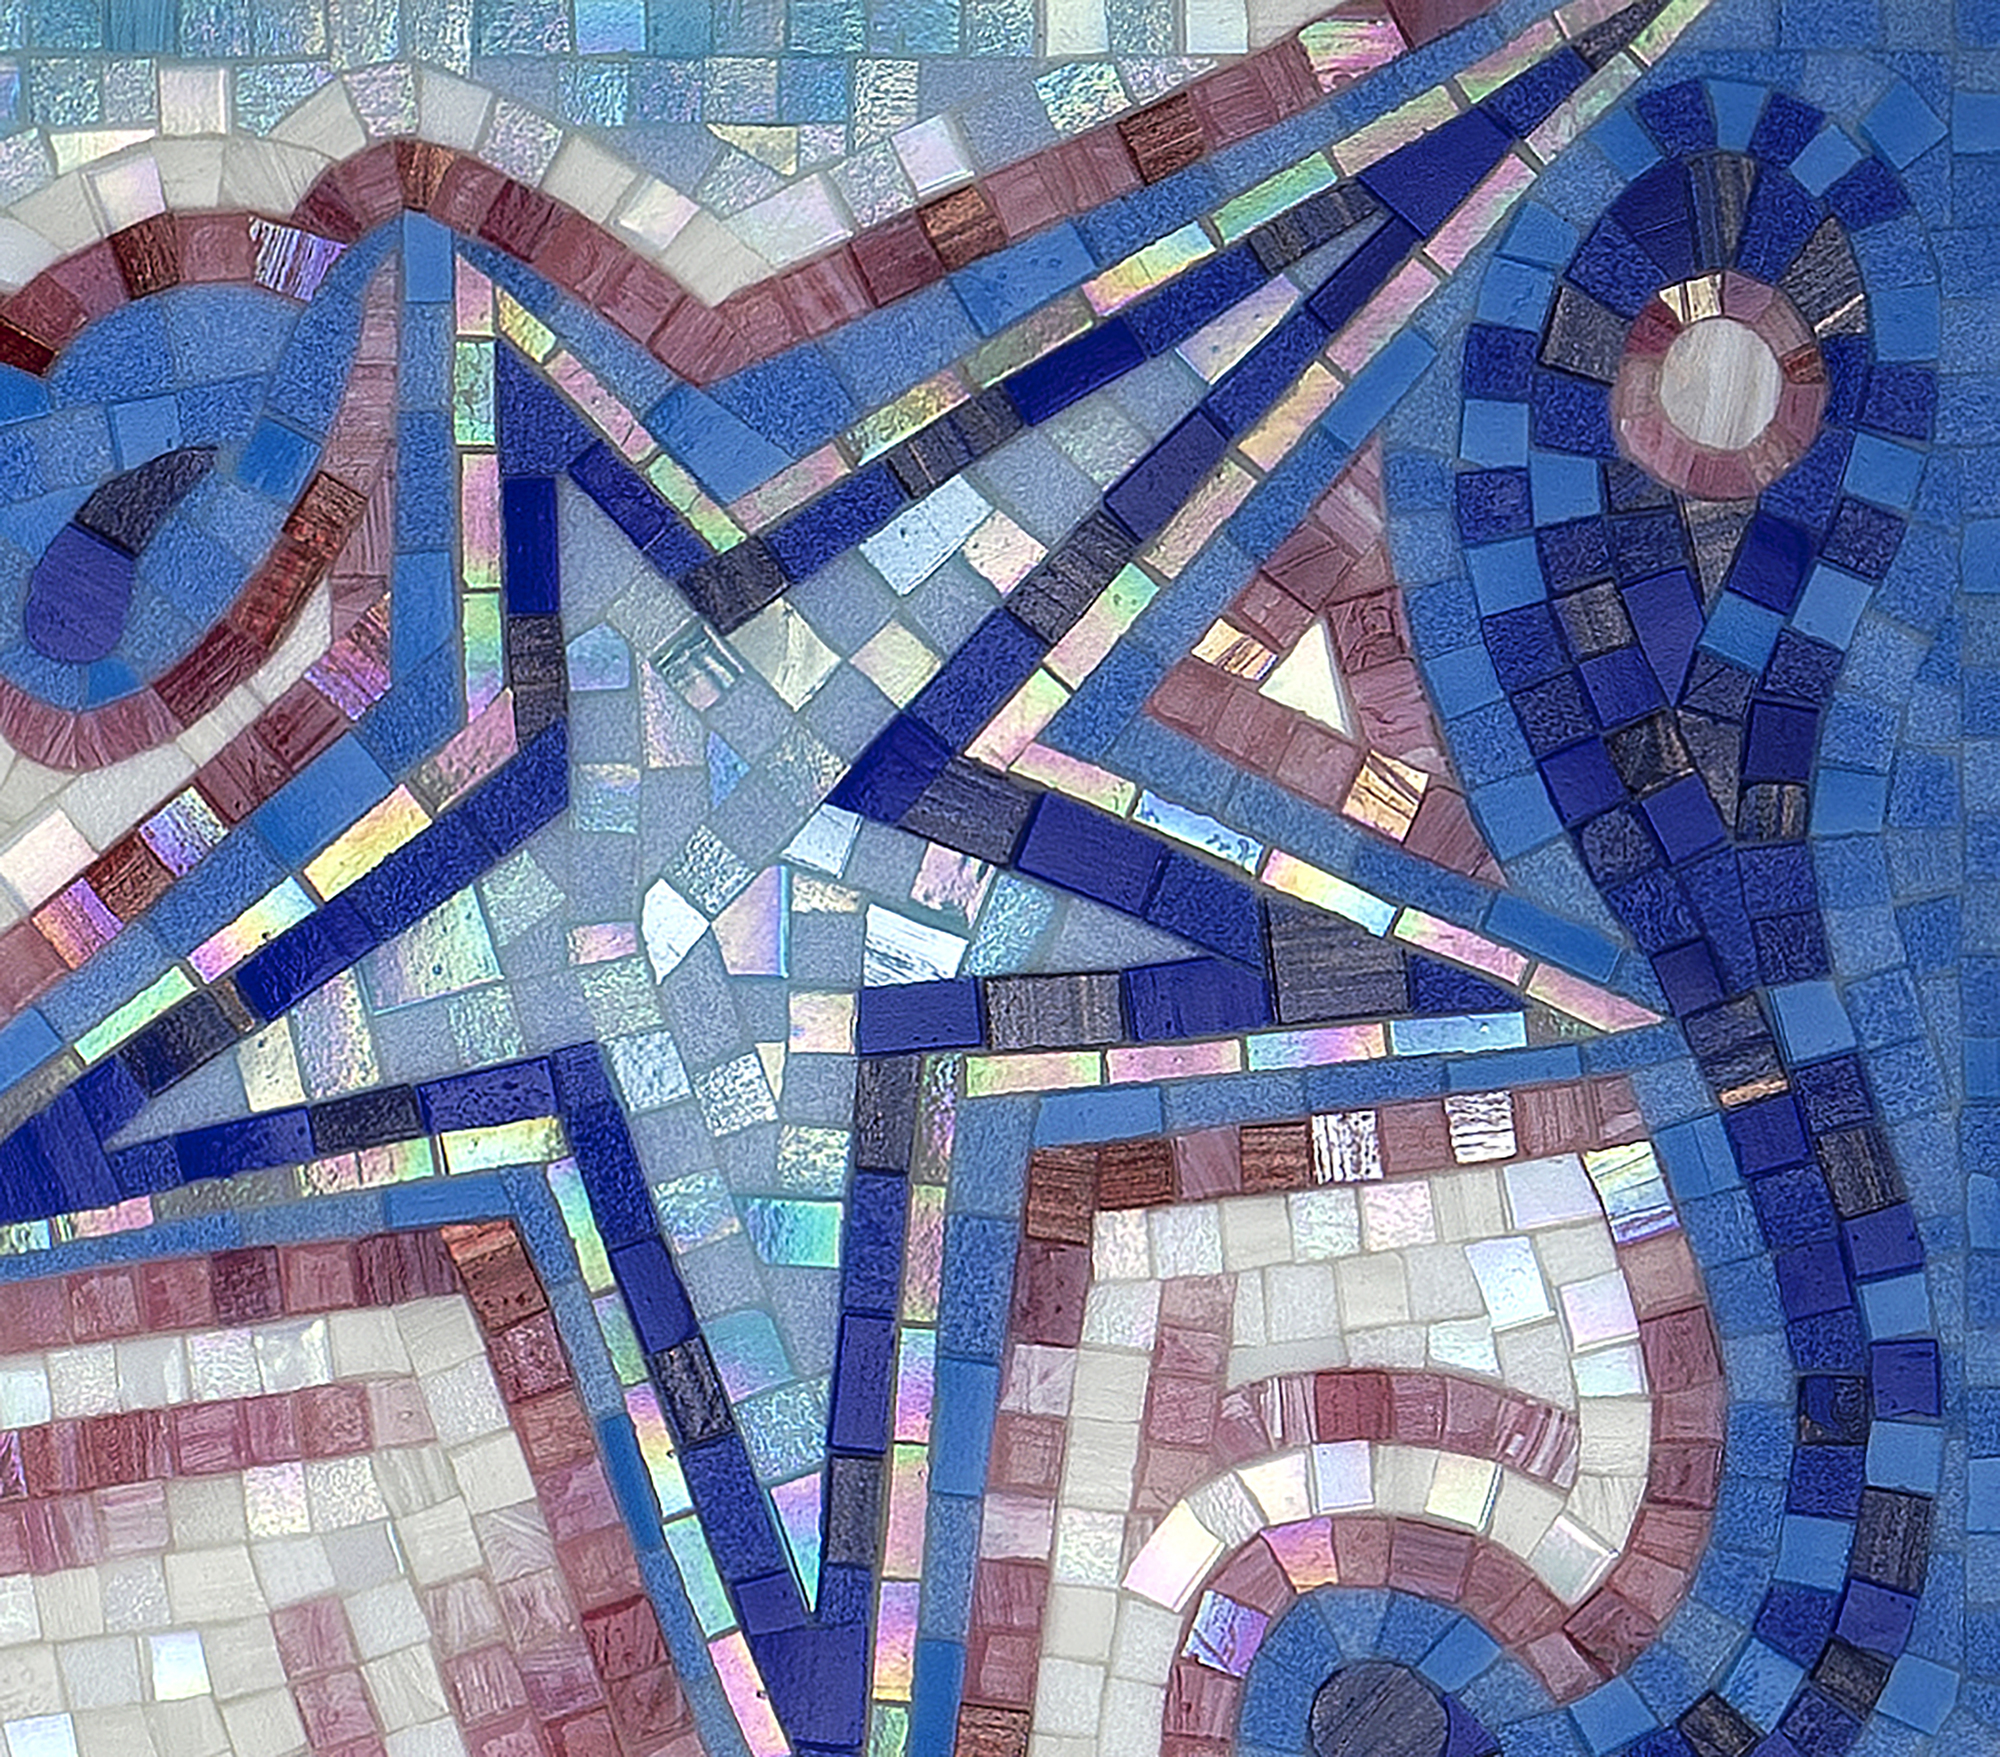 CARLOS LUNA - Iluminado - byzantine mosaic - 47 1/2 x 82 in.